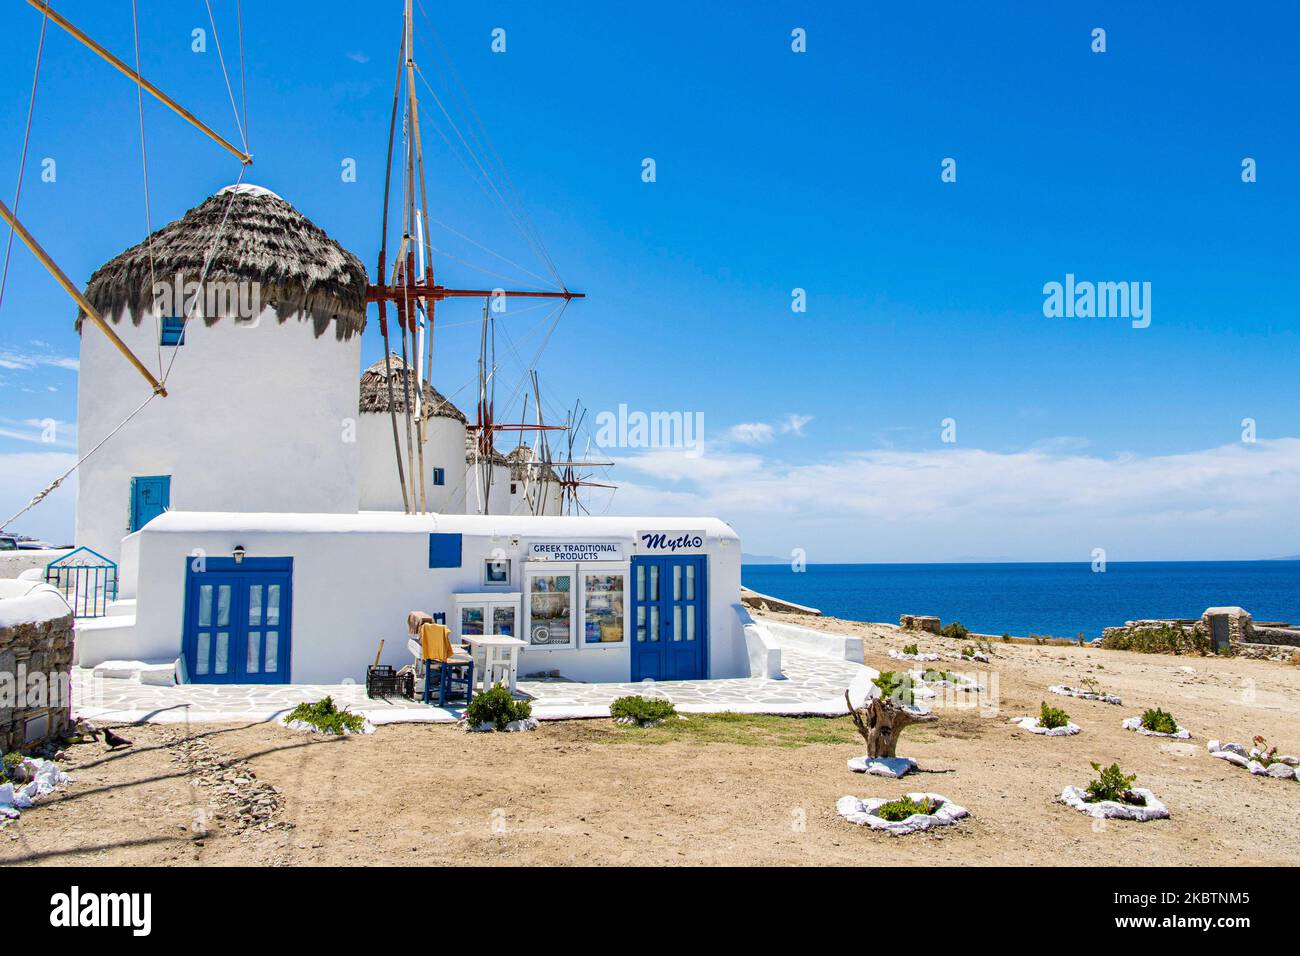 I mulini iconici dell'isola di Mykonos, le isole Cicladi, il Mar Egeo, la Grecia il 14 luglio 2020. Non c'è quasi nessuno ai mulini a vento a causa delle misure pandemiche di Coronavirus e del divieto di circolazione che la Grecia ha applicato. Ci sono 16 mulini a vento sull'isola, 5 dei quali sopra Chora o Mykonos Town, la città principale dell'isola. I mulini a vento sono stati costruiti nel 16th ° secolo dai veneziani, ma le loro costruzioni continuarono fino al 20th ° secolo. La famosa isola greca mediterranea è soprannominata l'Isola dei Venti con edifici tradizionali imbiancati come mulini a vento o chiesetta. Mykon Foto Stock